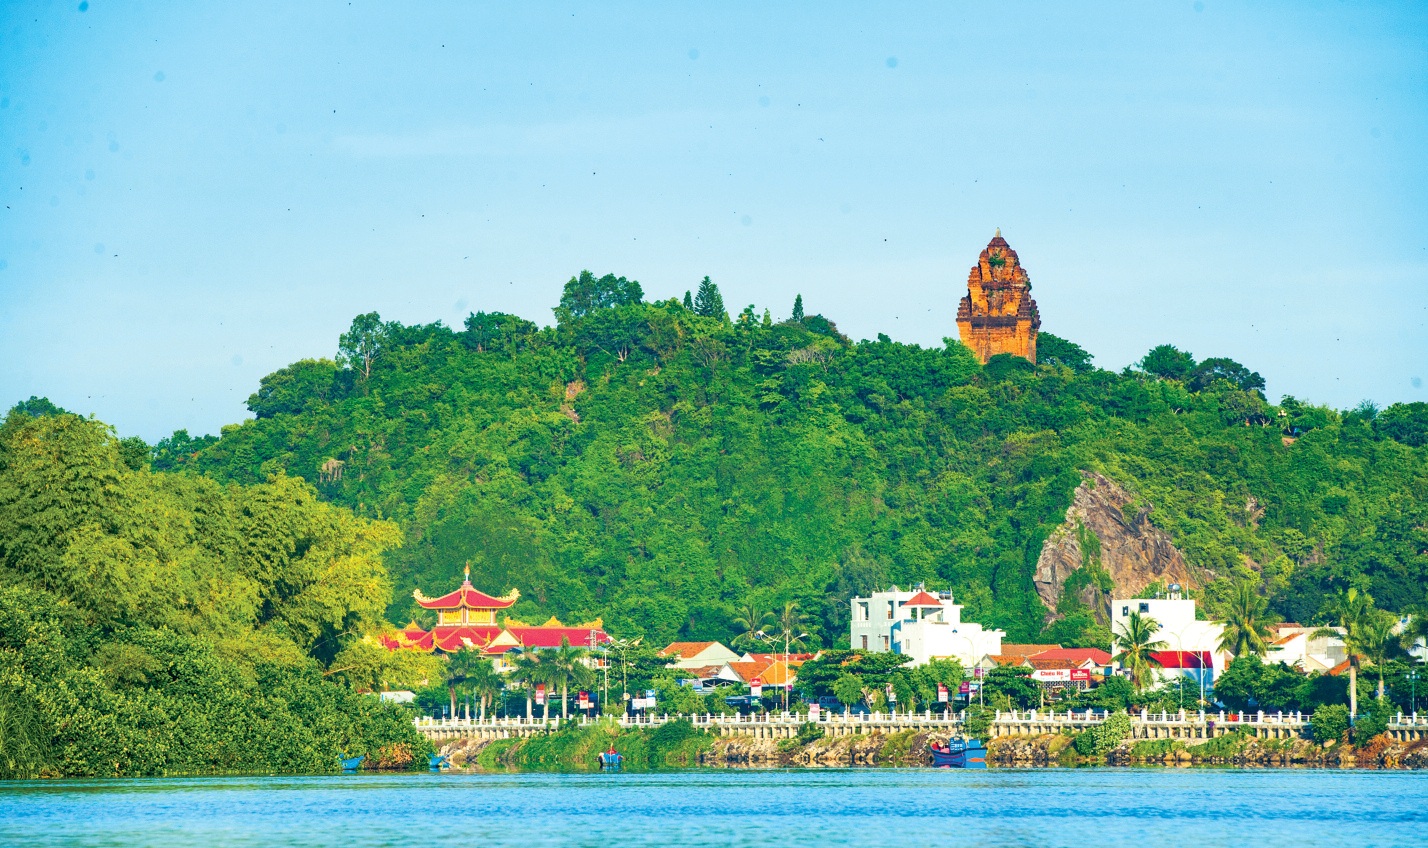 Tháp Nhạn nằm bên bờ Bắc sông Đà Rằng, gần quốc lộ 1A, thuộc TP. Tuy Hòa, tỉnh Phú Yên